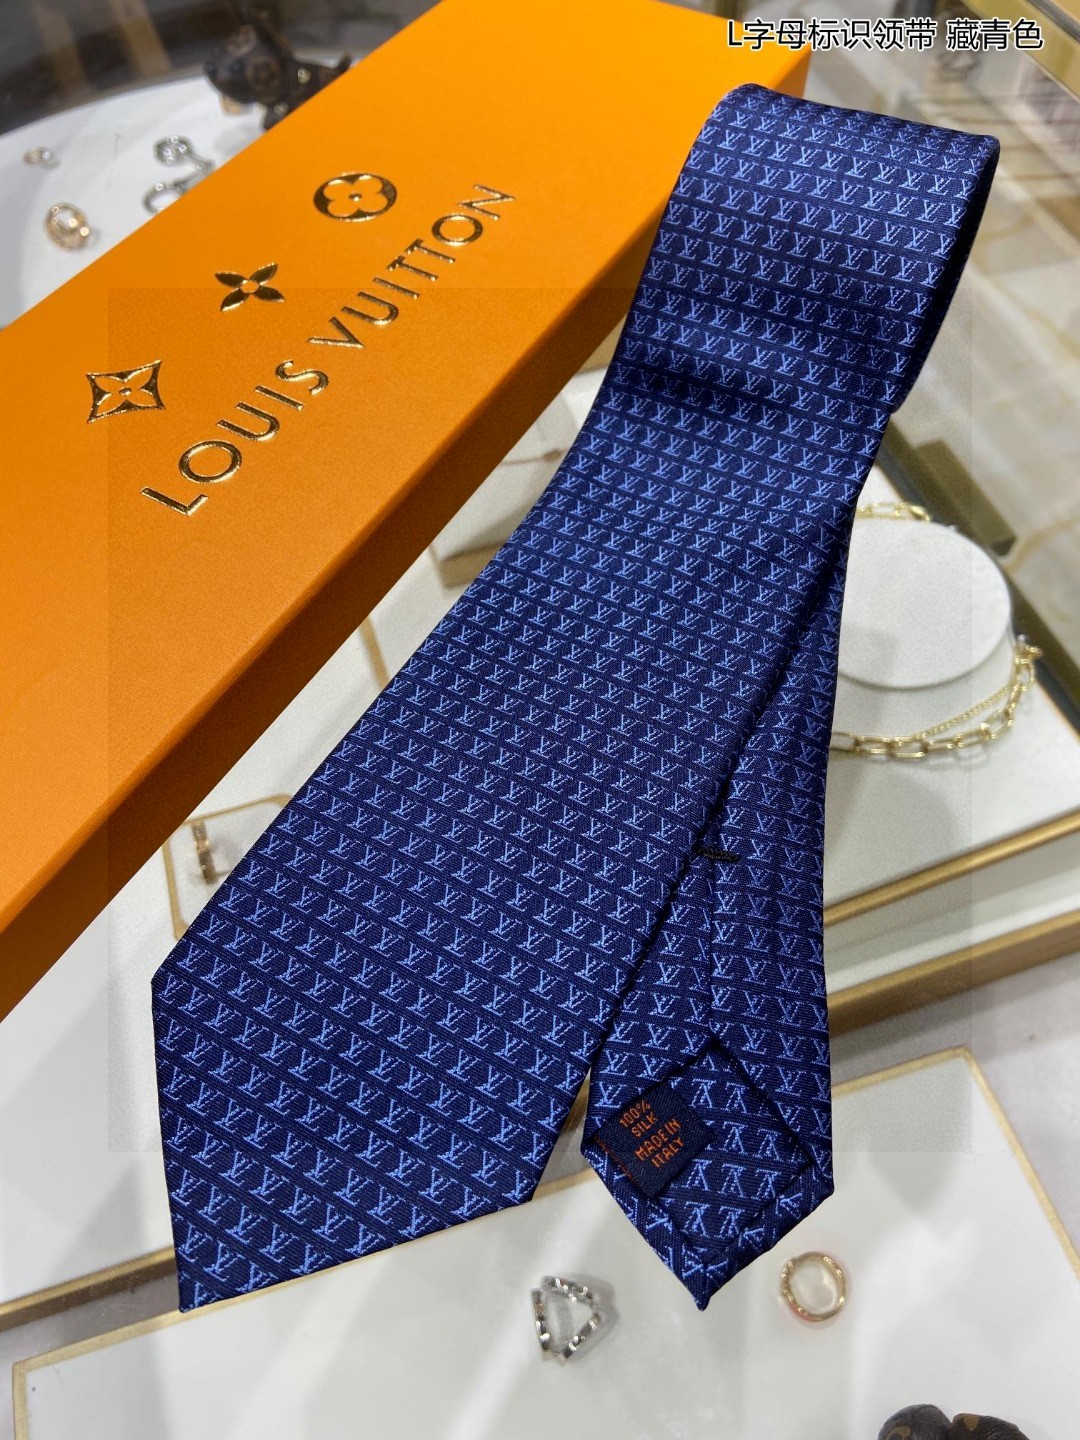 特价男士领带系列L字母标识领带稀有展现精湛手工与时尚优雅的理想选择此款真丝织就的DiamondsV领带以